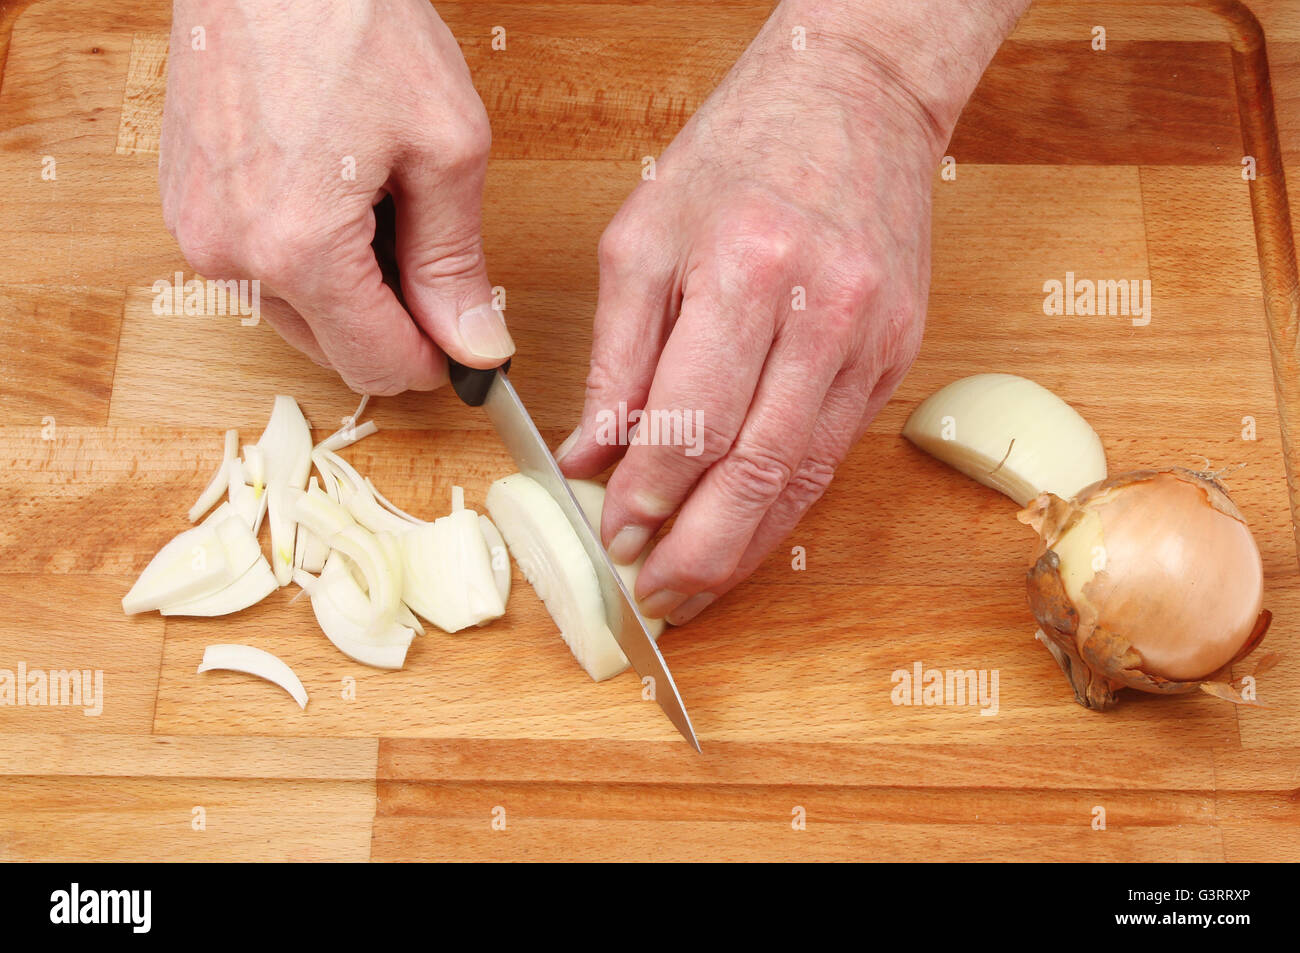 Primer plano de manos picar cebolla sobre una plancha de madera junta choppiing Foto de stock